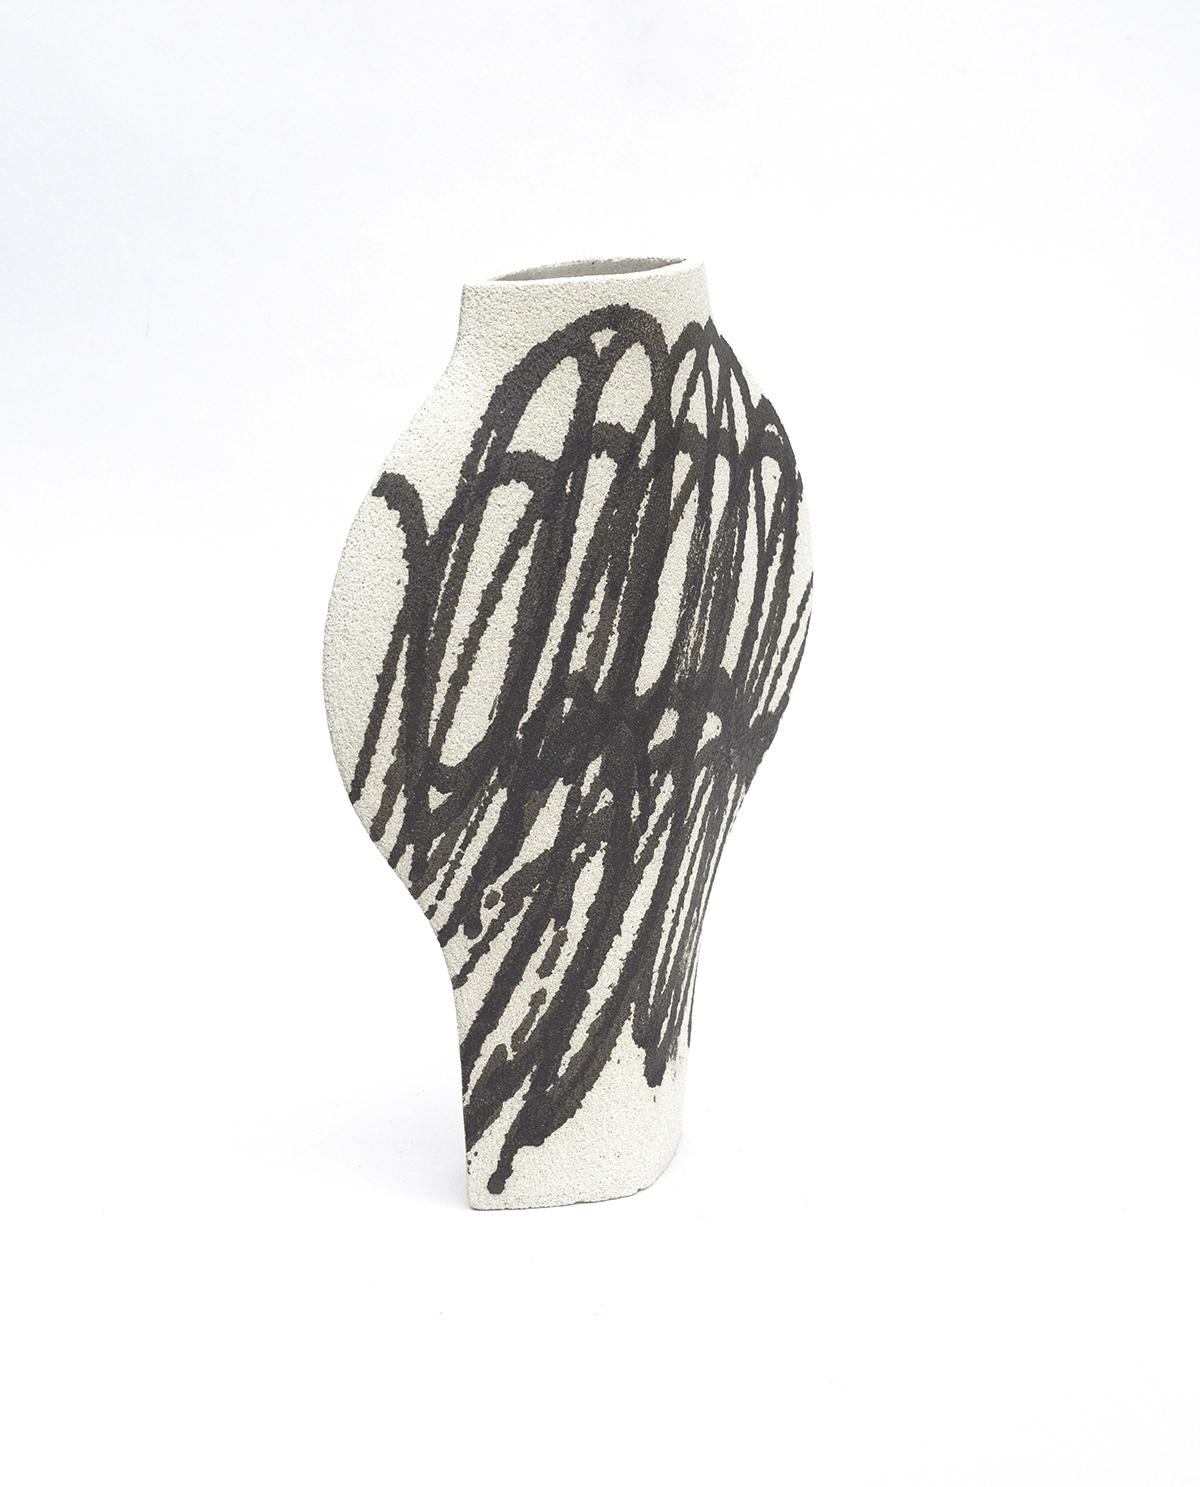 dal Circles Black' Keramik-Vase 

Diese Vase ist Teil einer neuen Serie, die von ikonischen Kunstbewegungen (genauer gesagt von Gemälden) inspiriert ist. Hier ist unser DAL-Modell mit Motiven, die auf abstrakten Gemälden basieren. Sie werden vor